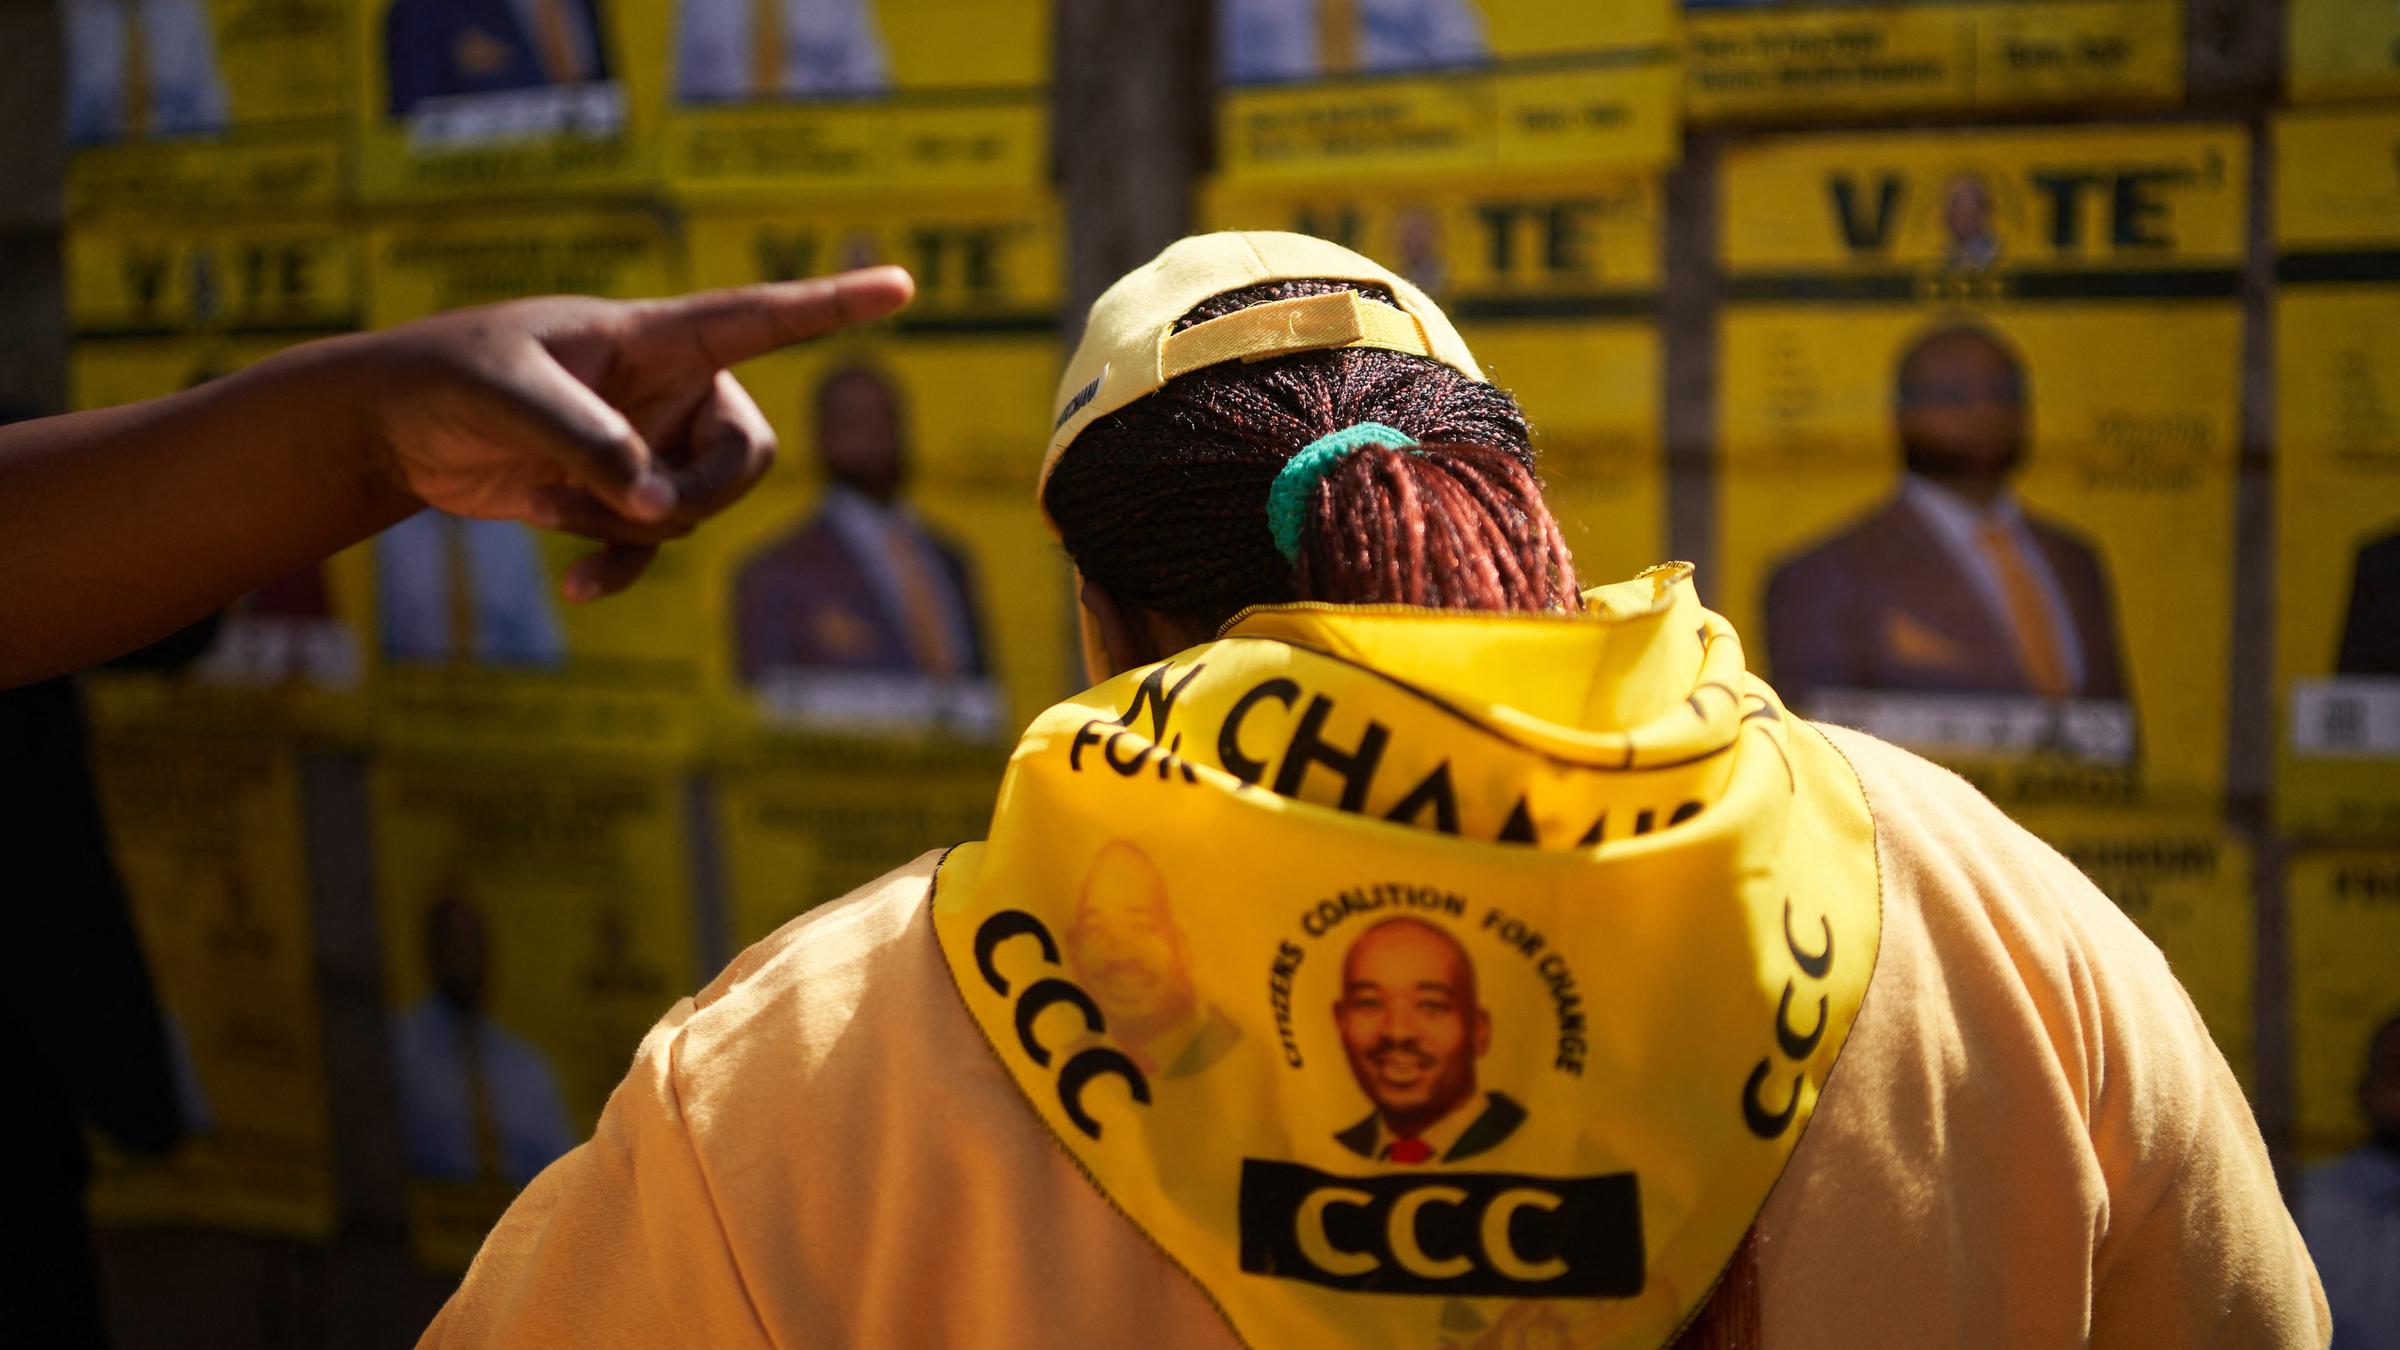 Ein Unterstützer der Oppositionspartei trägt eine gelbe Jacke mit einem aufgedruckten Porträt des Kandidaten. Im Hintergrund sind verschwommen Wahlplakate zu sehen.